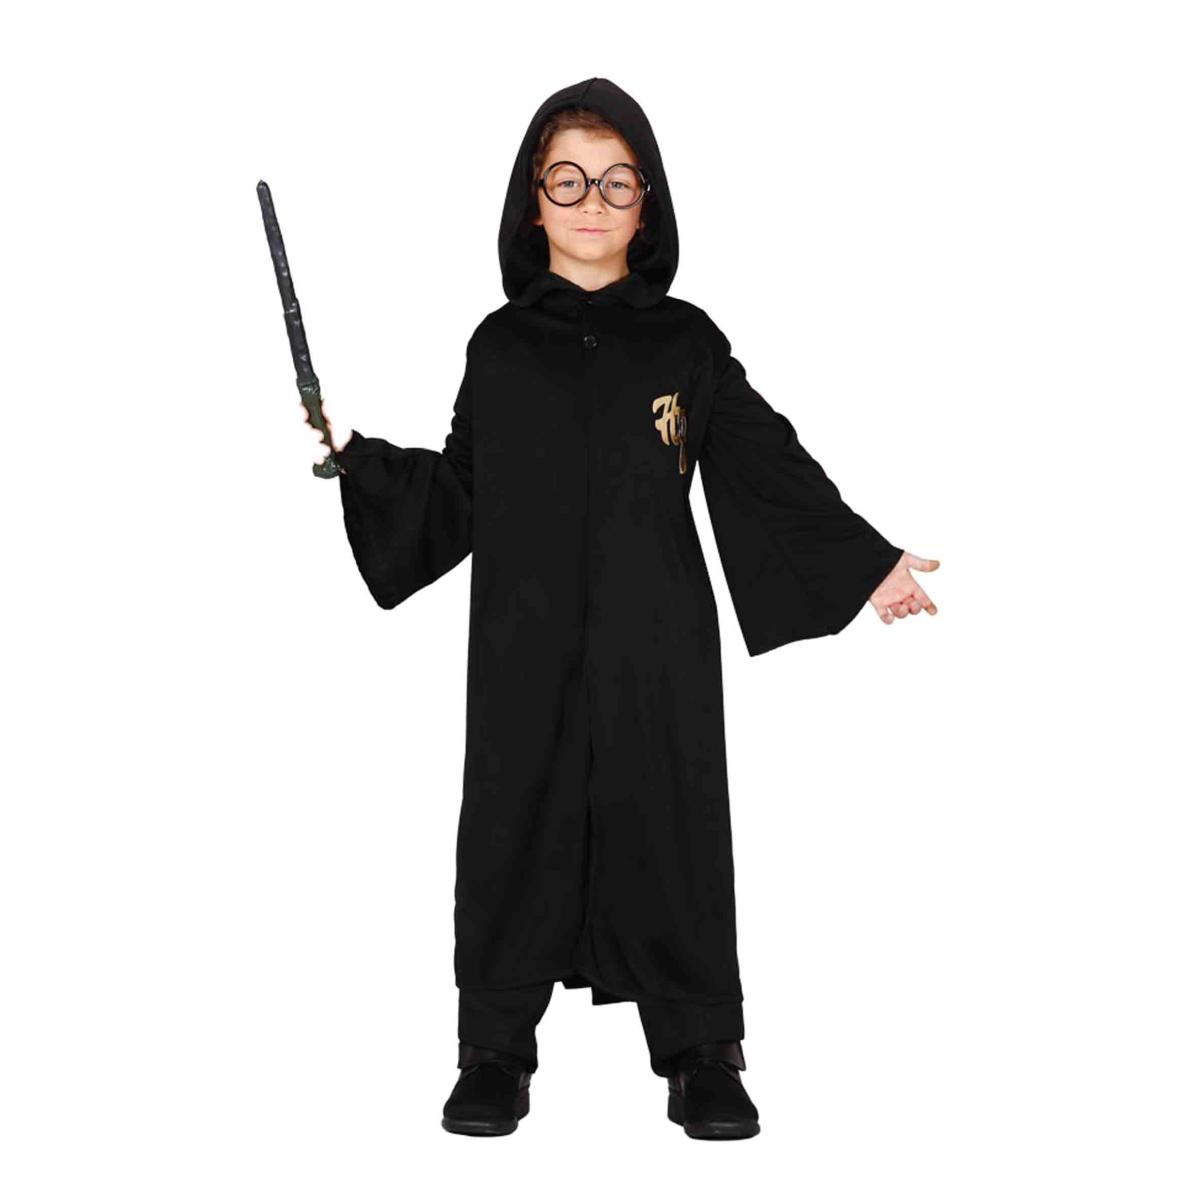 Guirca Costume Apprendista Stregone Harry Potter Bambino GR-07810  8434077817810V